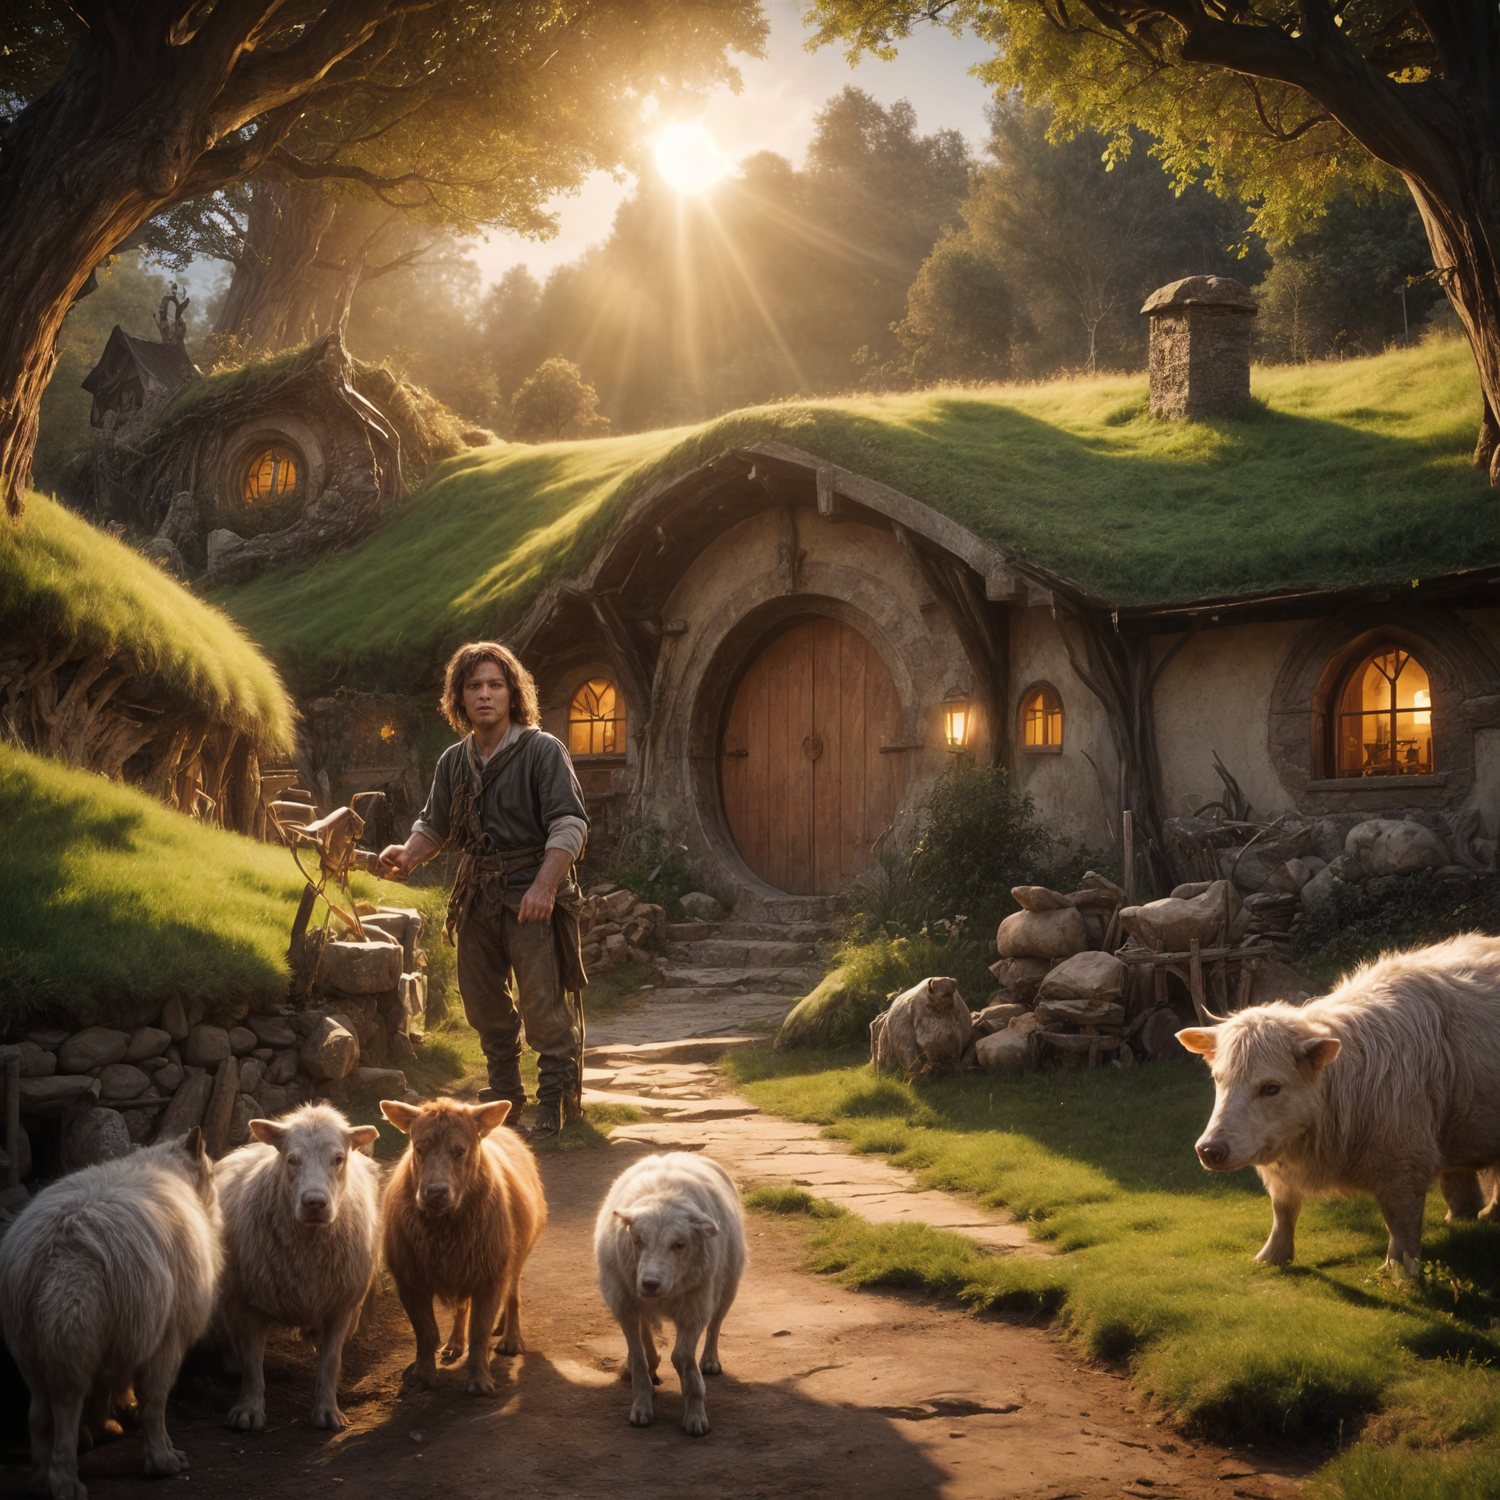 2.0 Hobbits and Shire-folk